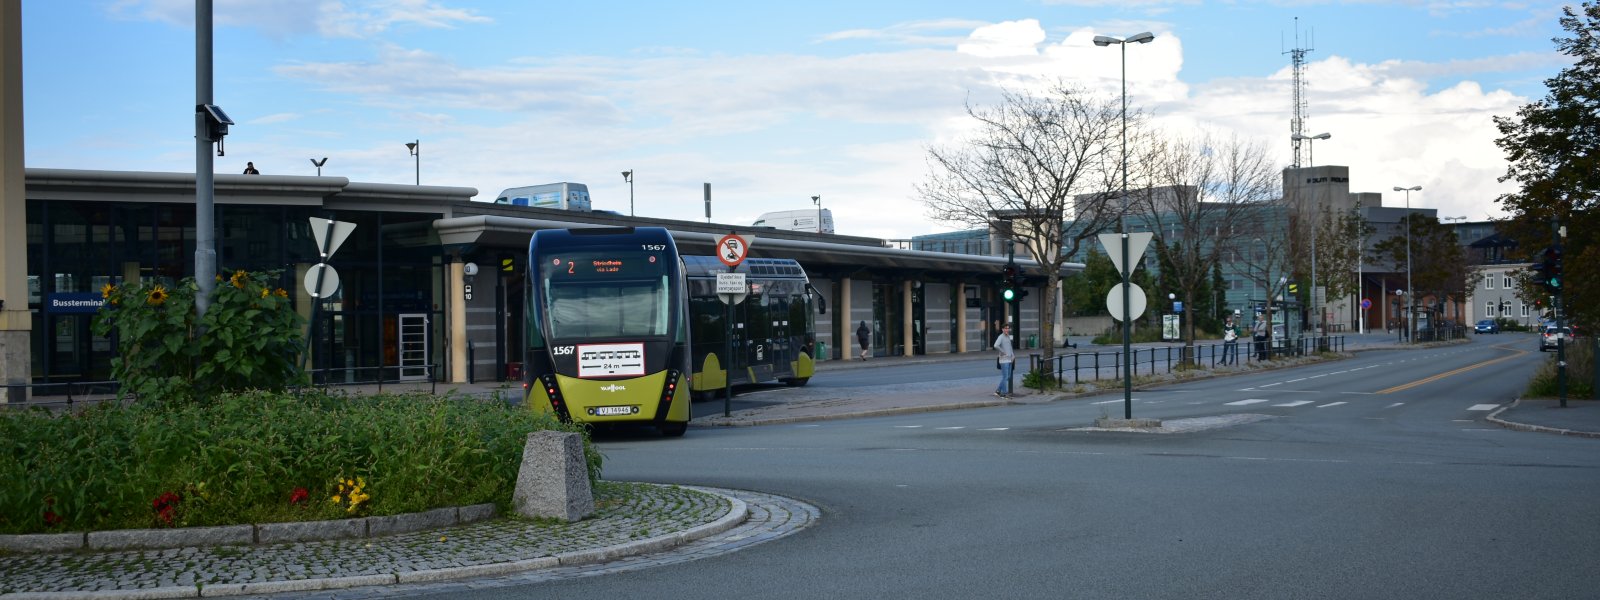 Buss ved sentralbanestasjonen 2